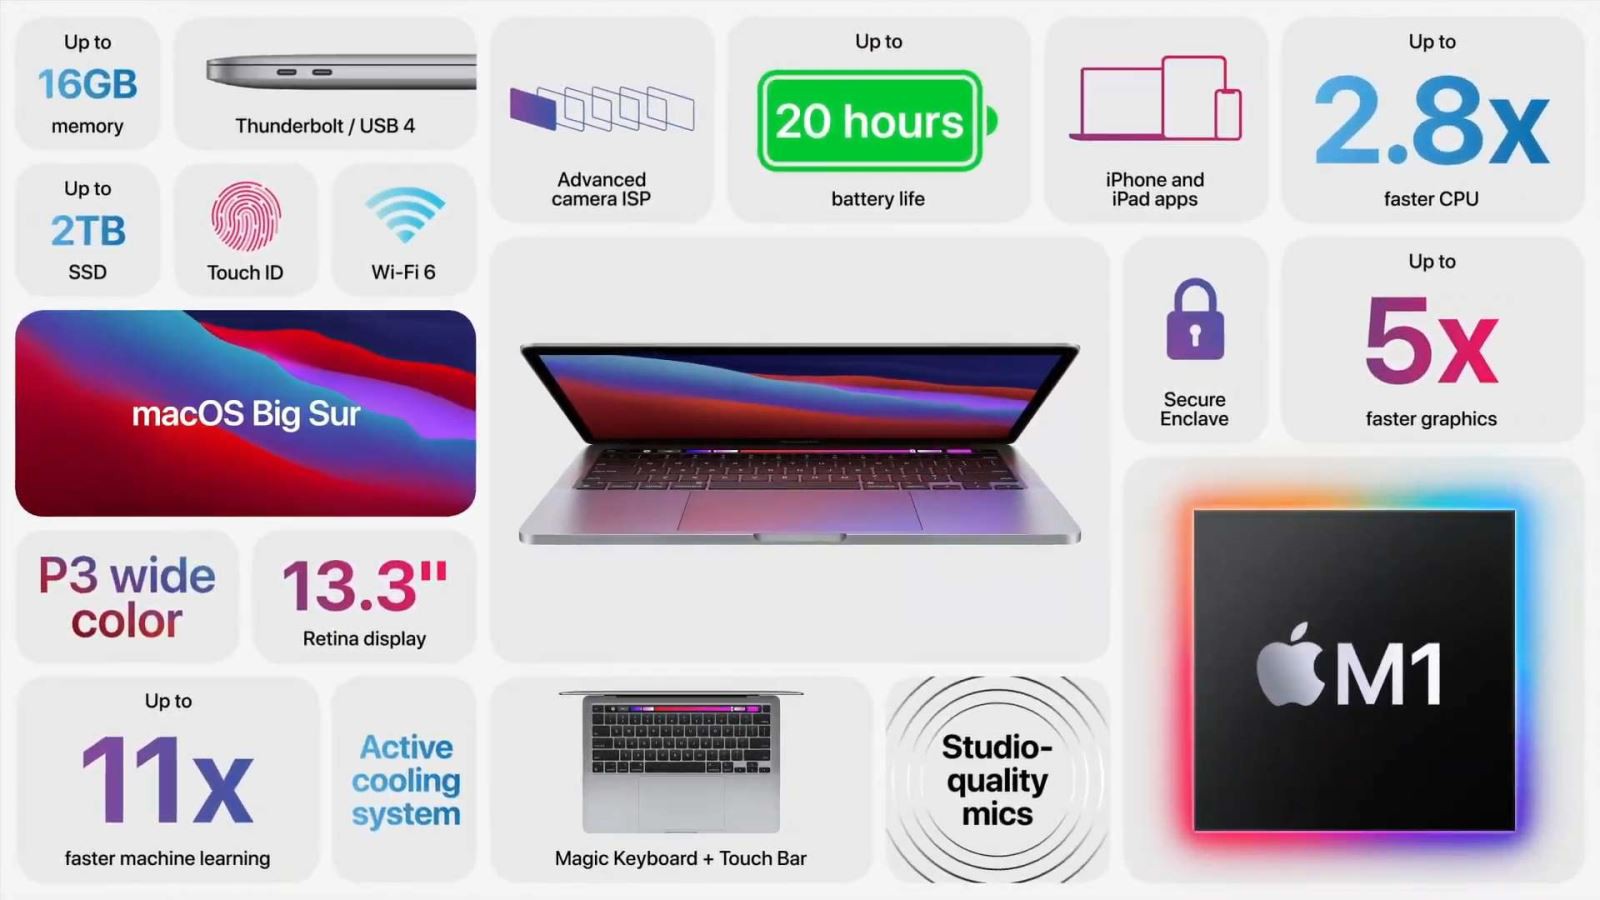 Macbook Pro 13.3 inch